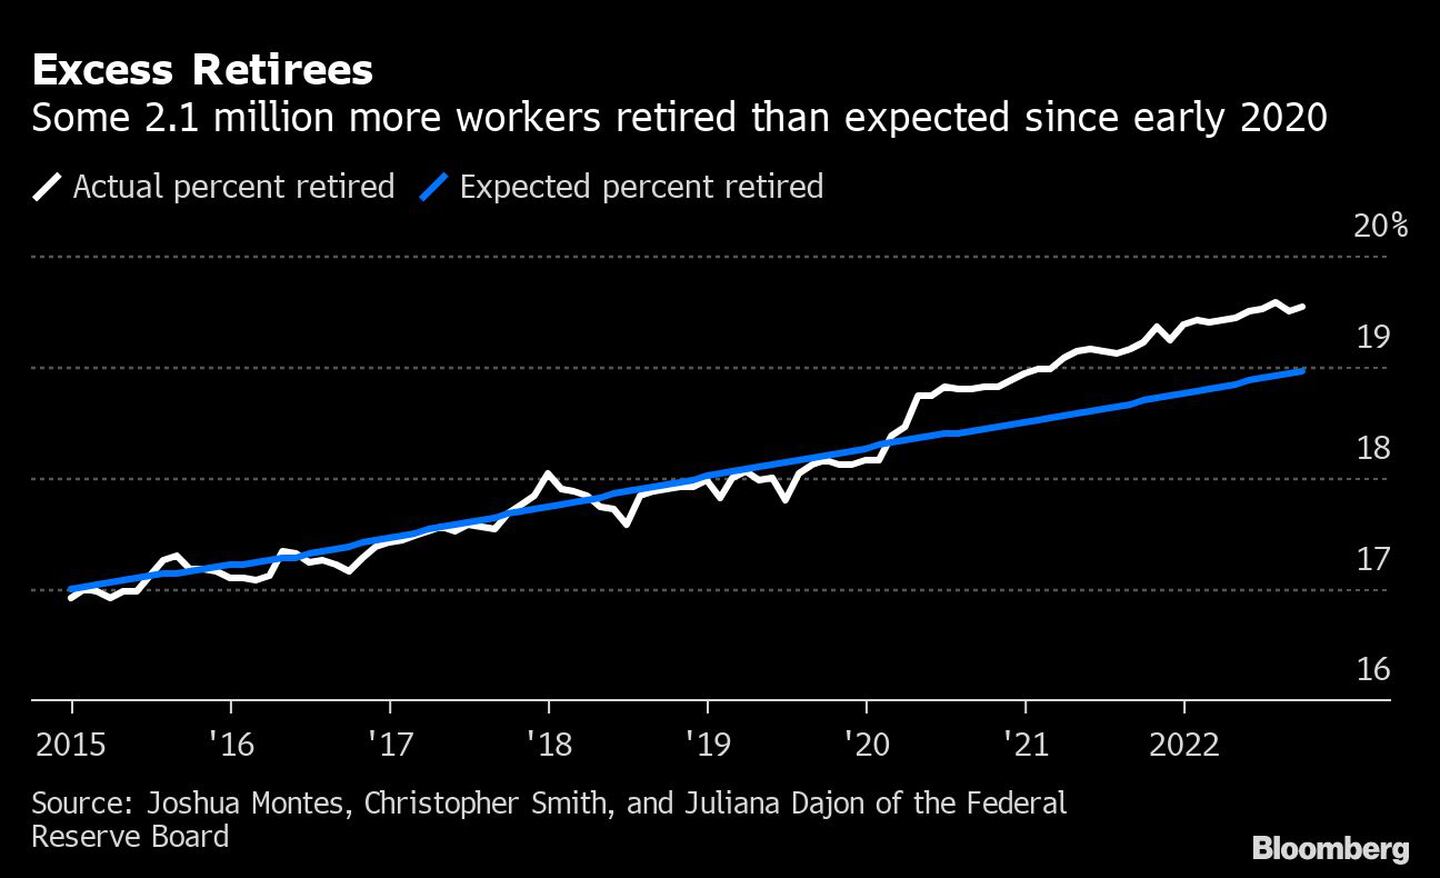 Unos 2,1 millones de trabajadores más de lo esperado se jubilaron desde principios de 2020dfd